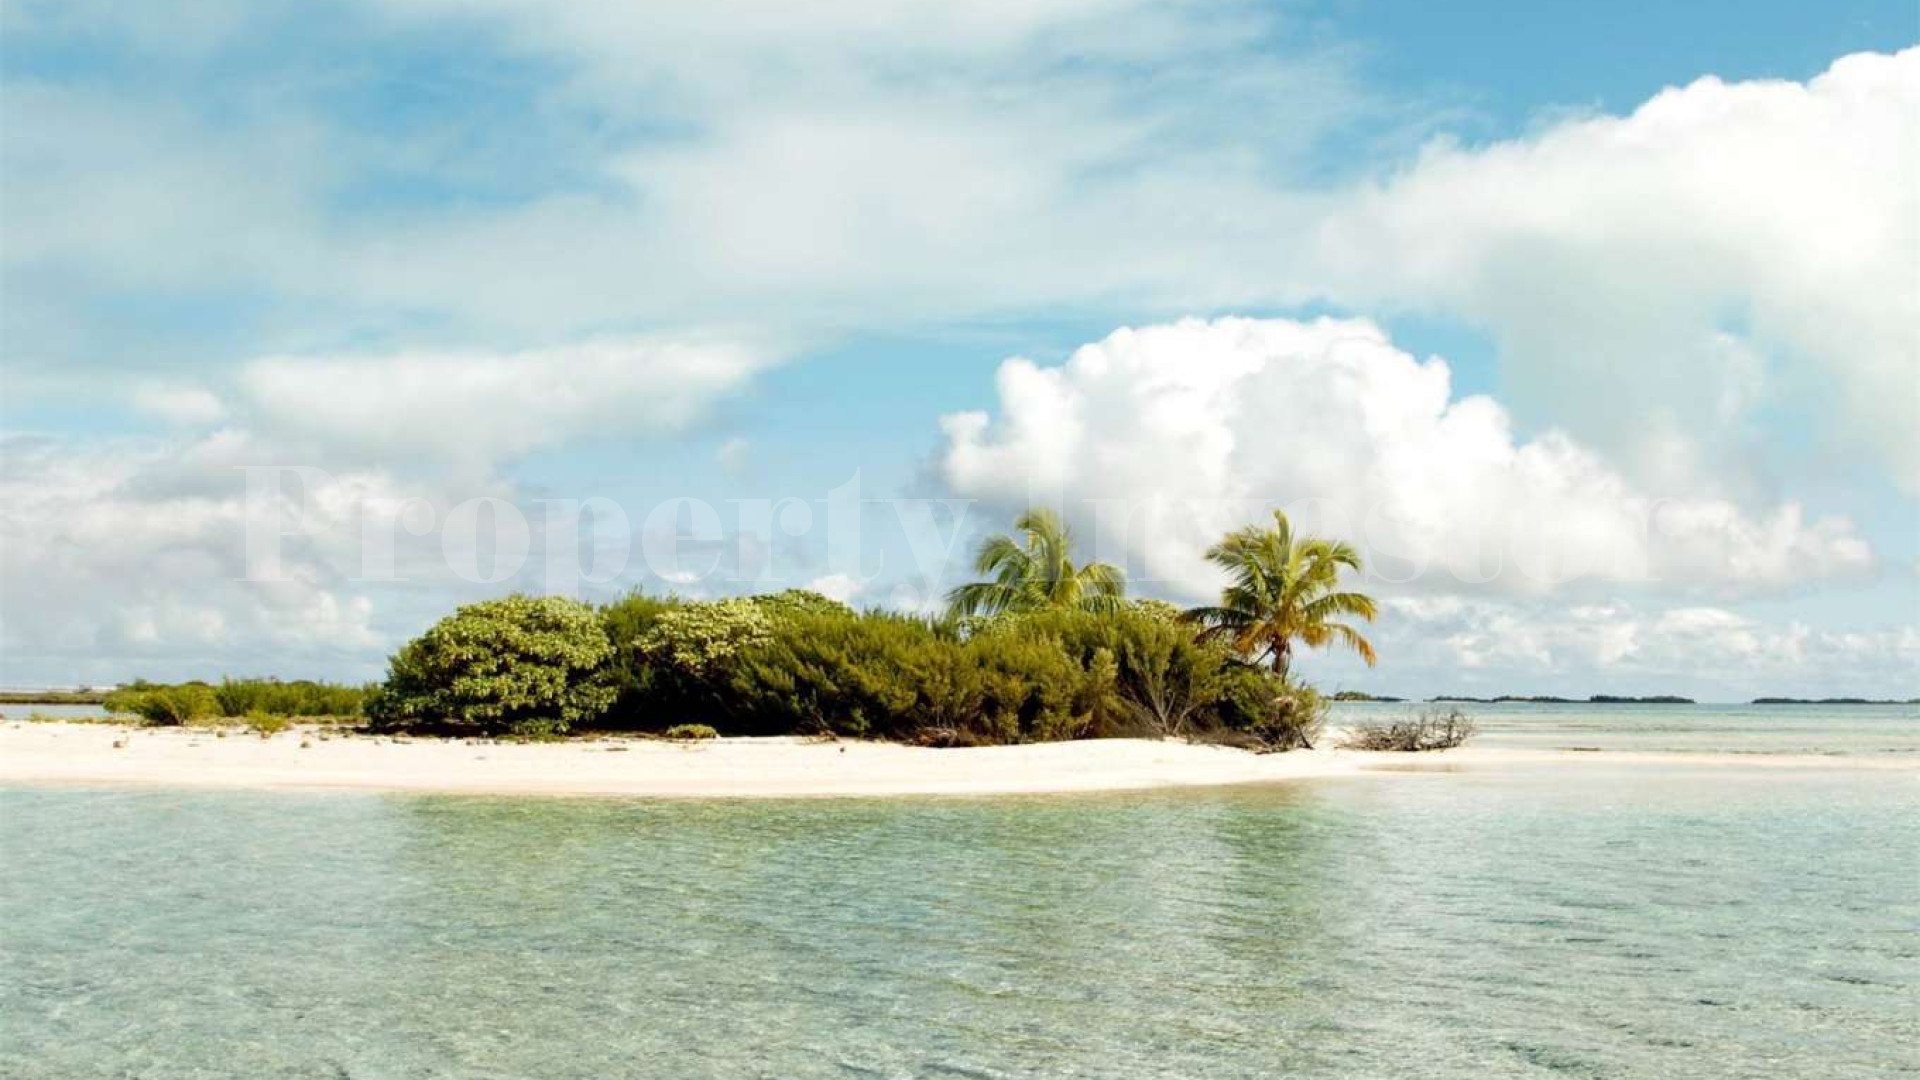 Продаётся дикий остров 0,7 га во Французской Полинезии